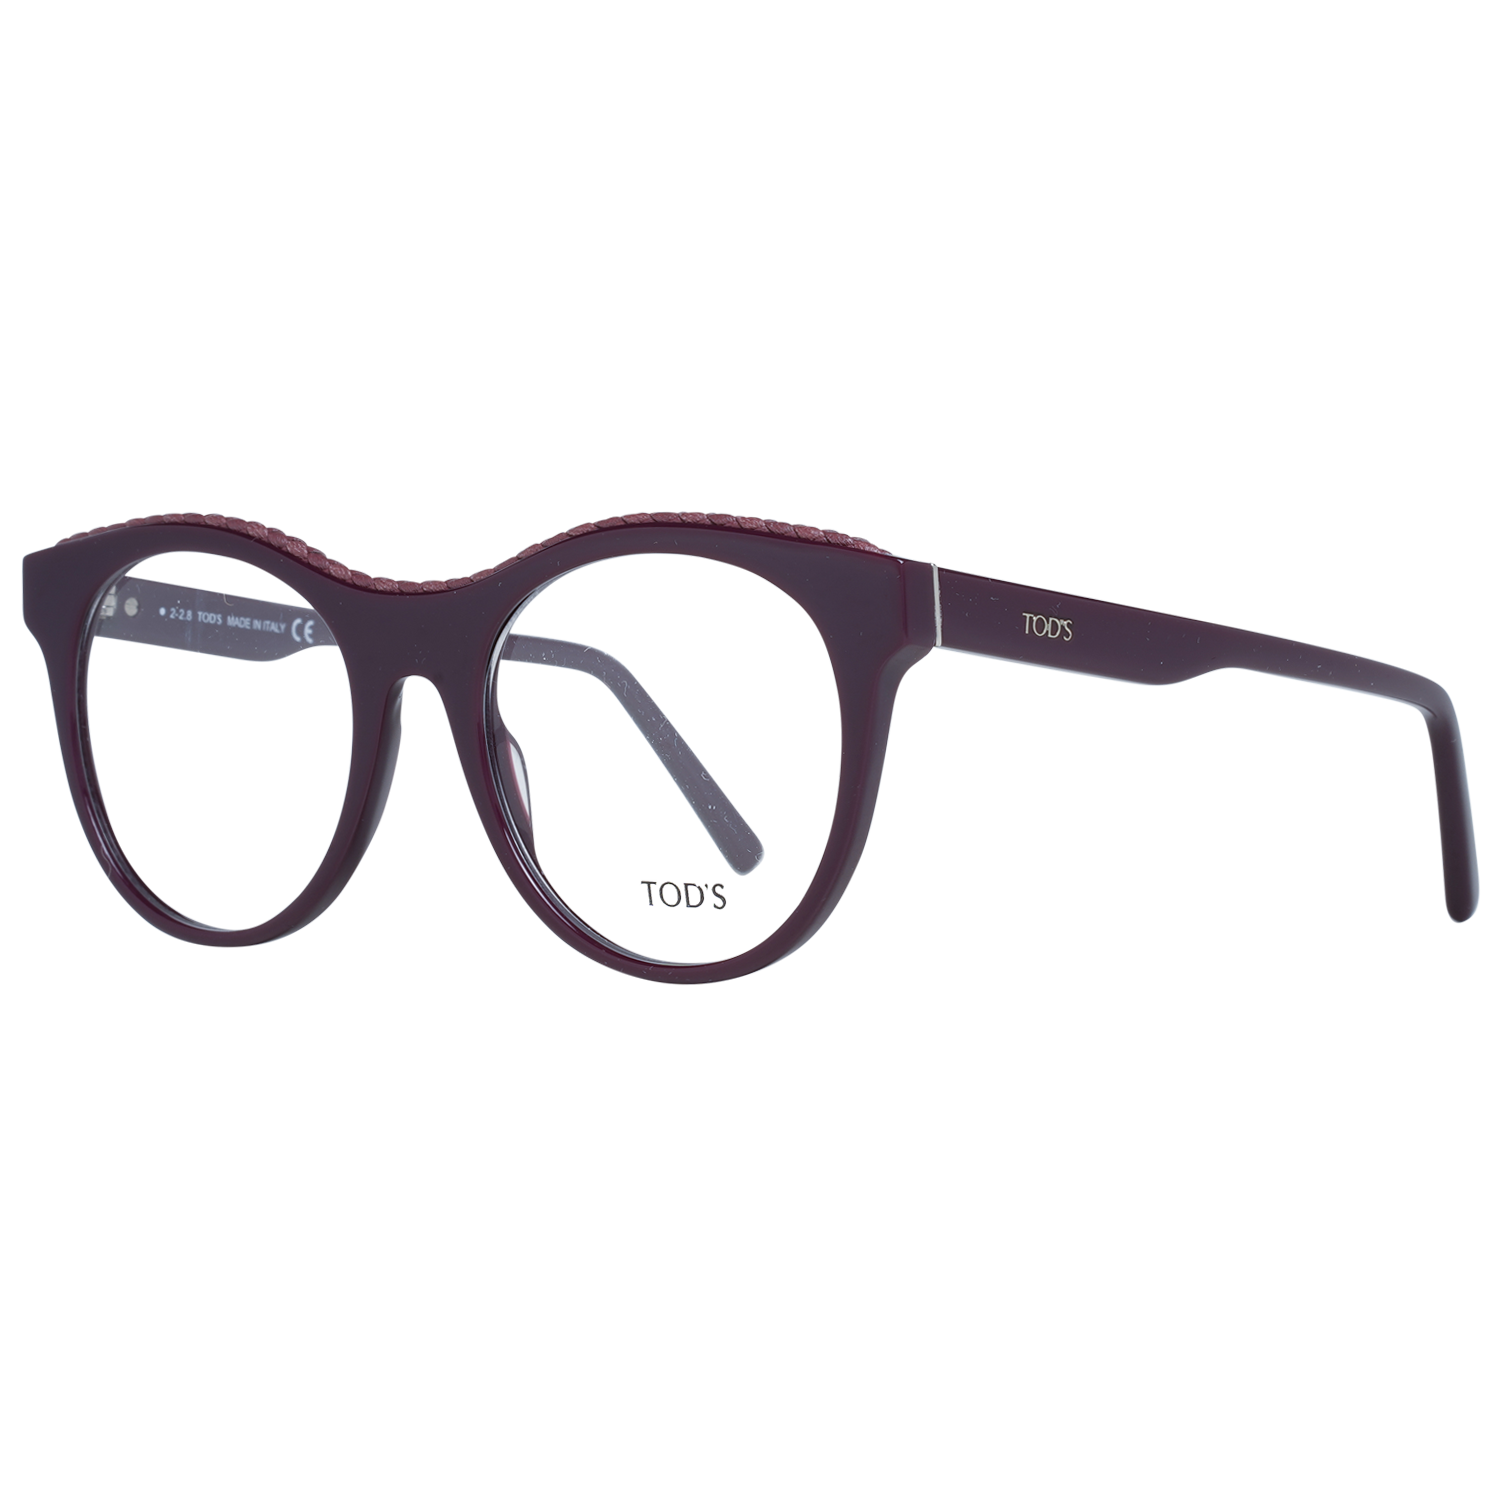 Tods Frames Tods Glasses Women's Purple Oval Frames TO5223 081 52mm Eyeglasses Eyewear UK USA Australia 